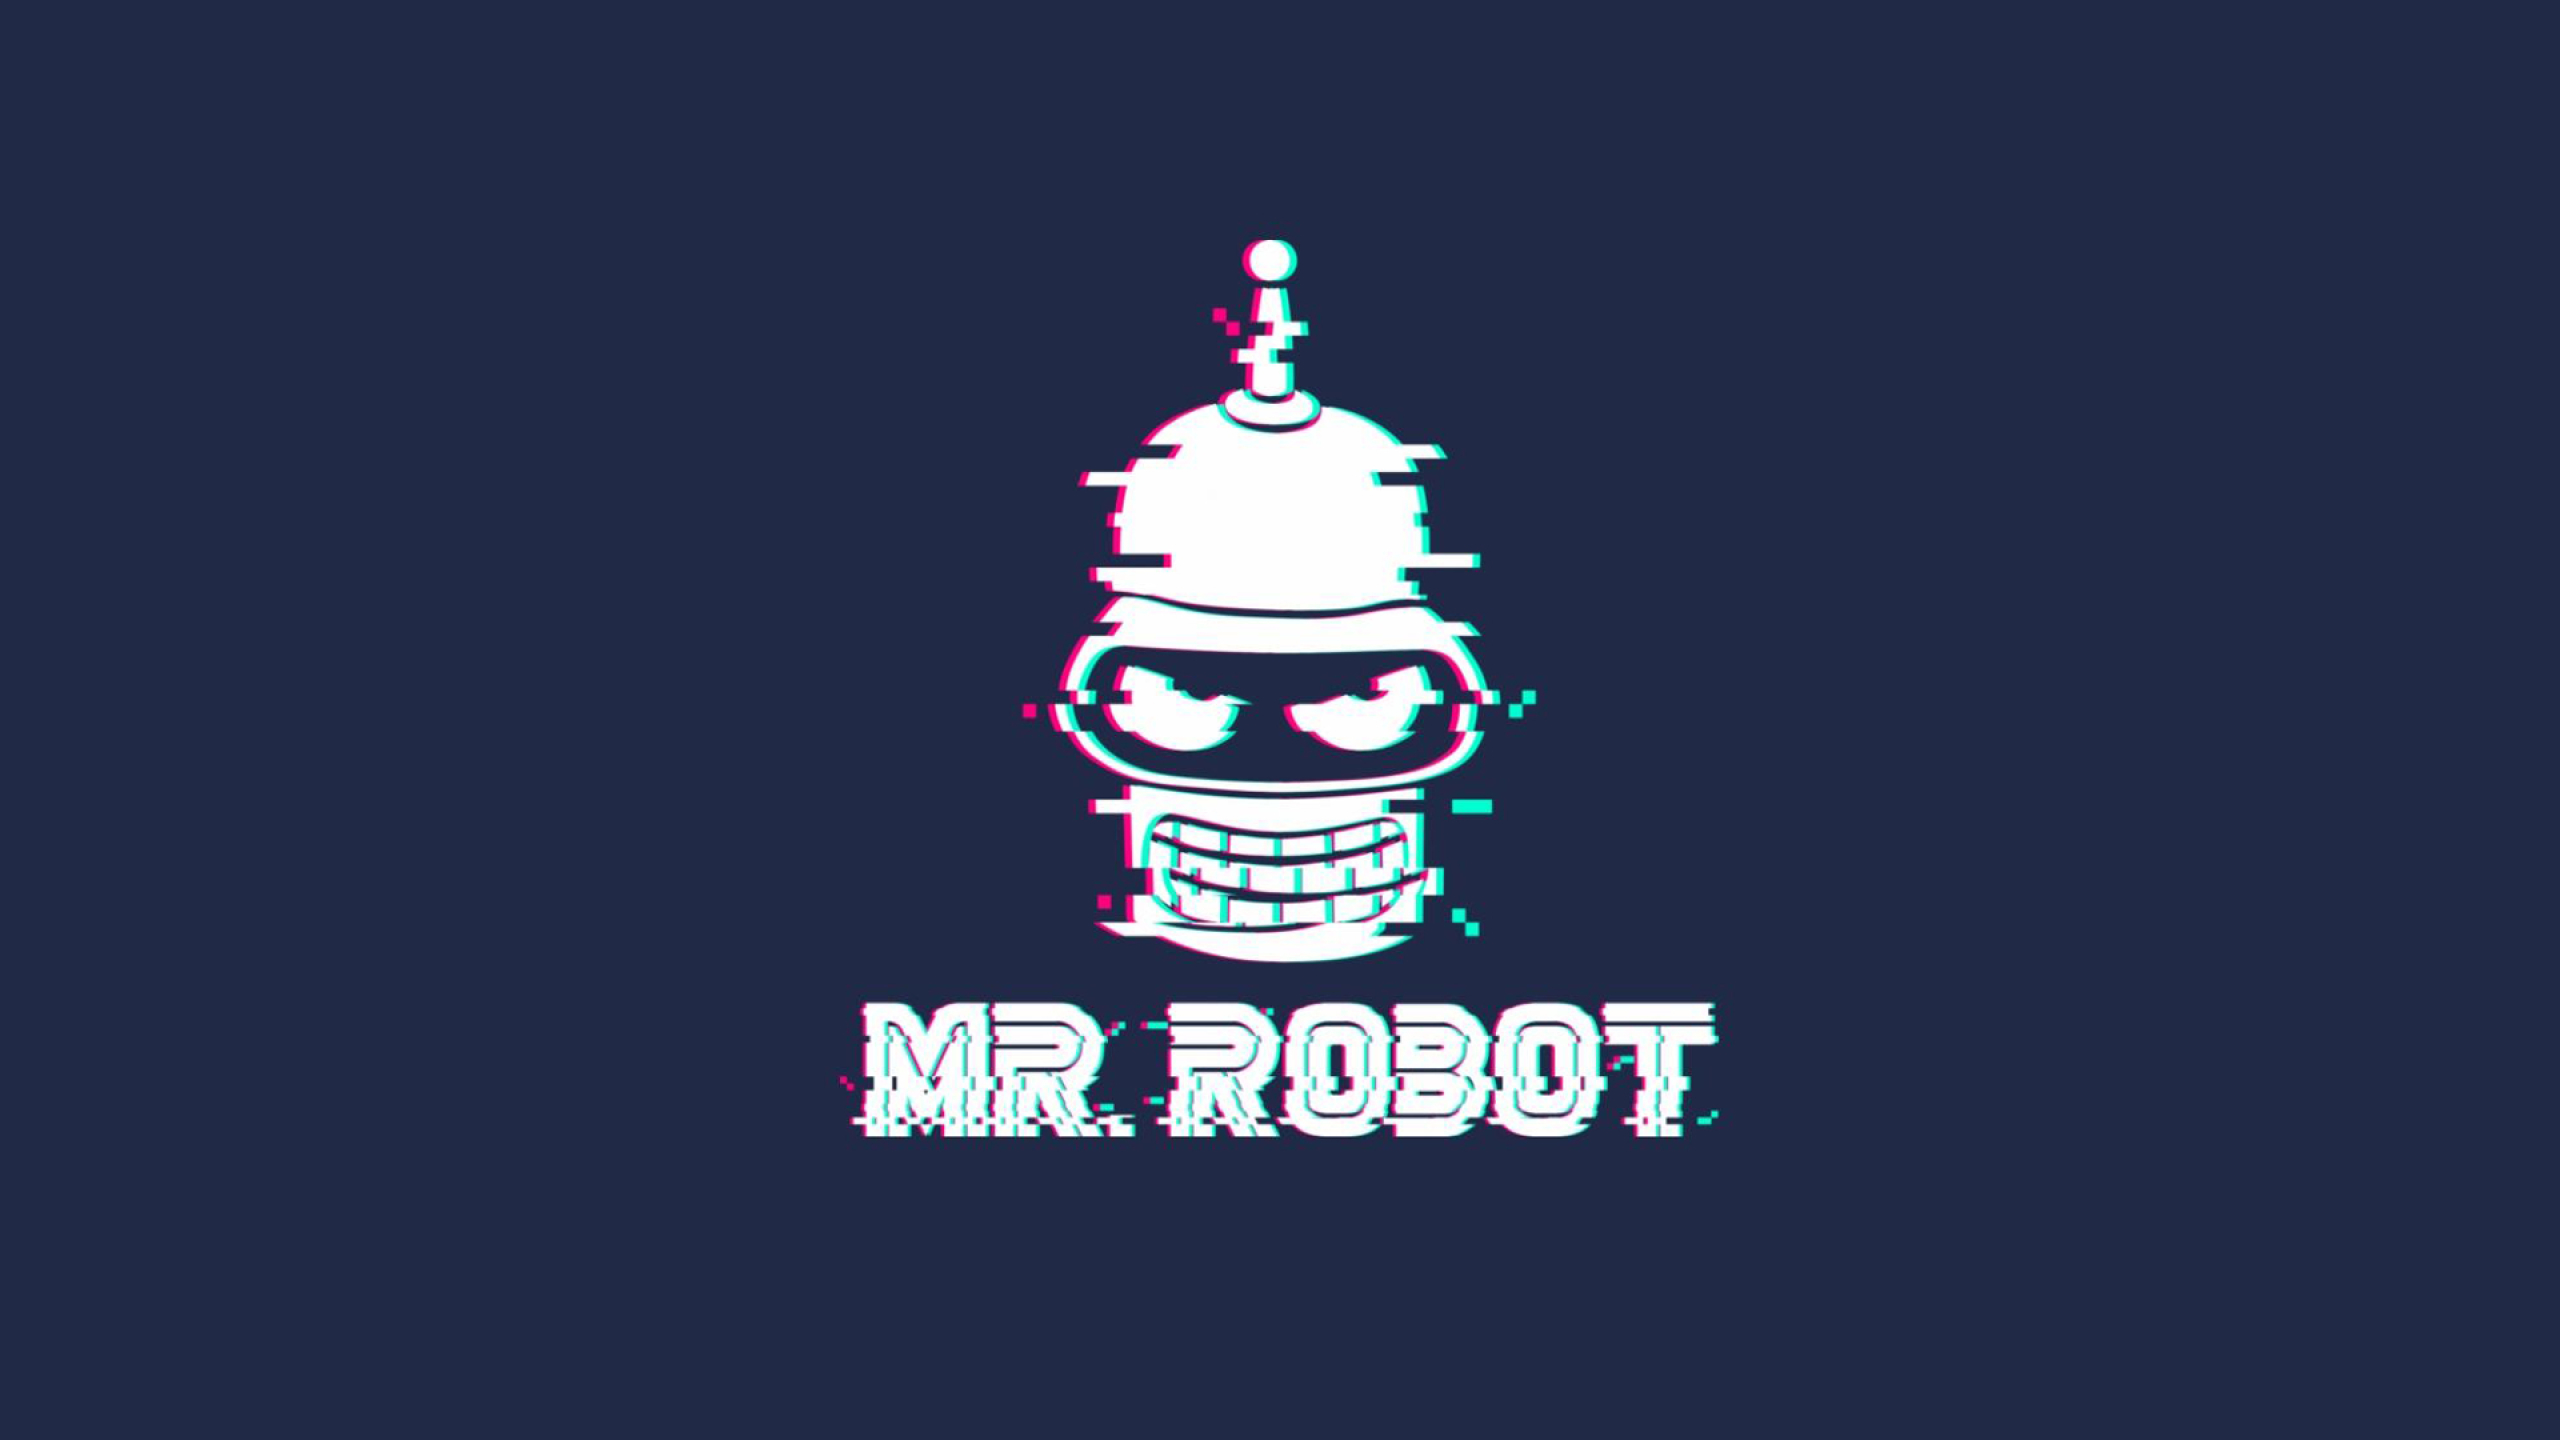 Mr Robot Wallpaper Hd - HD Wallpaper 